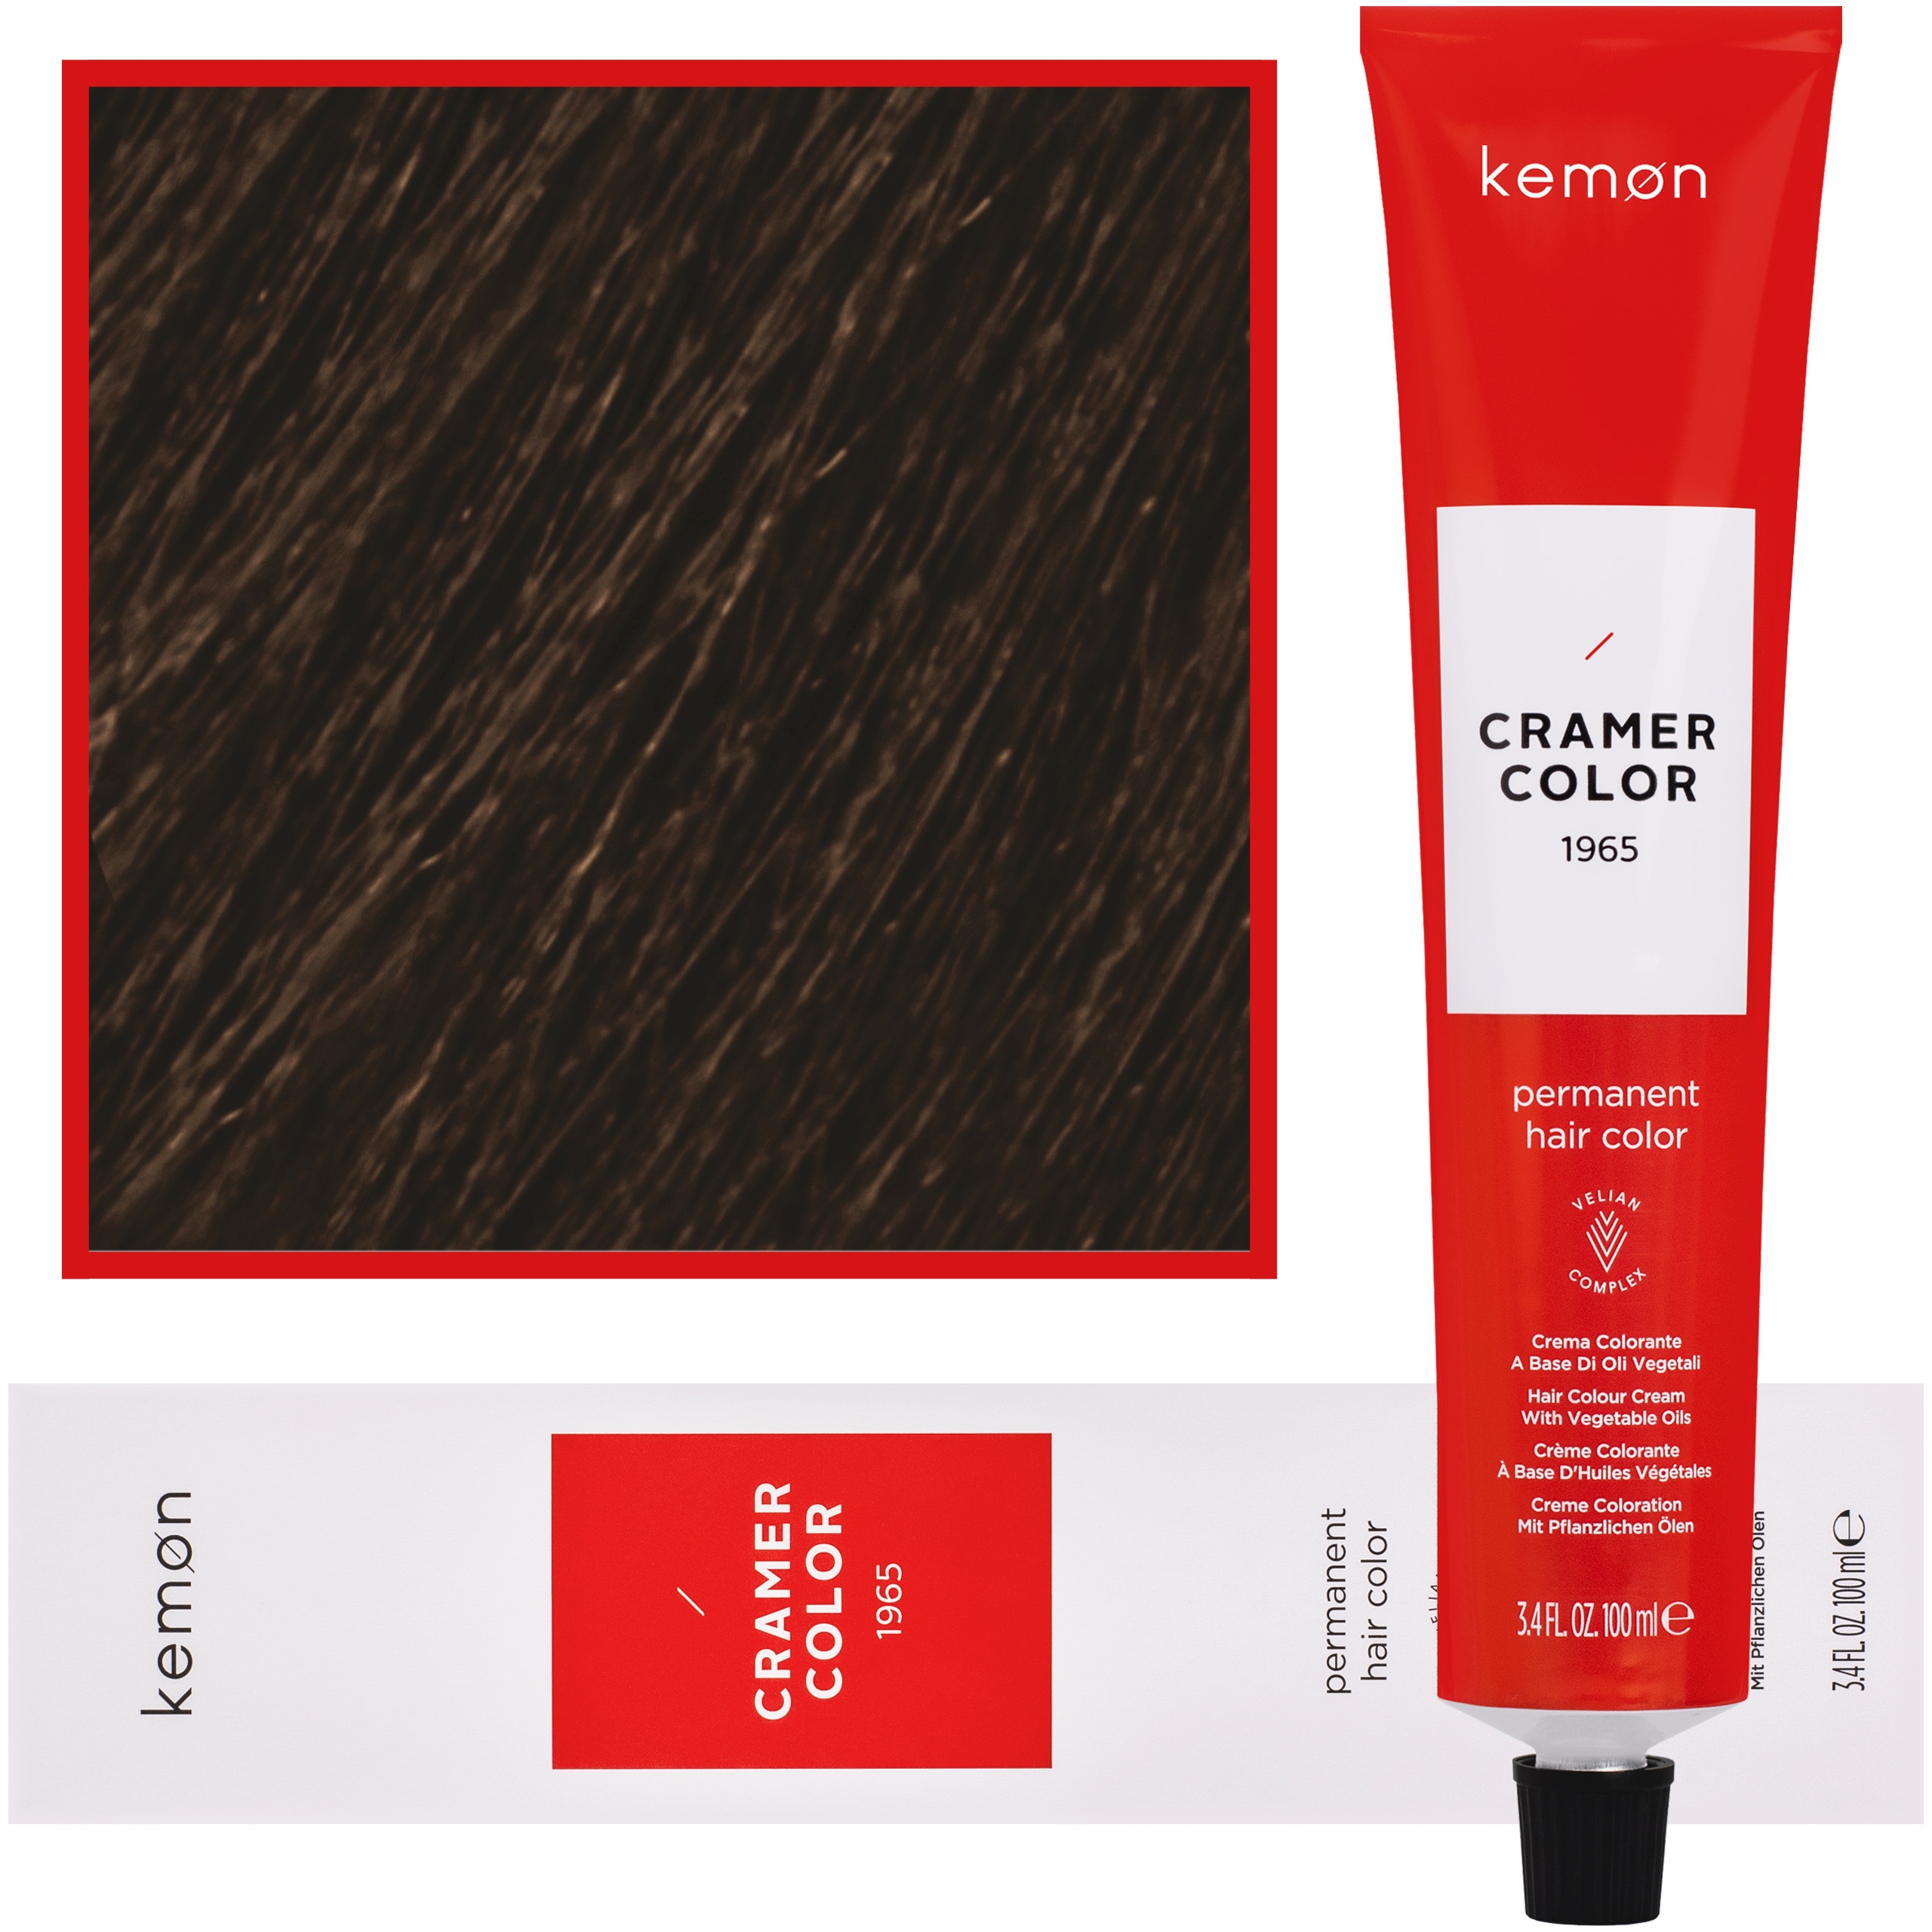 Фото - Фарба для волосся Kemon Cramer Color – kremowa farba do włosów z olejem kokosowym, 100 